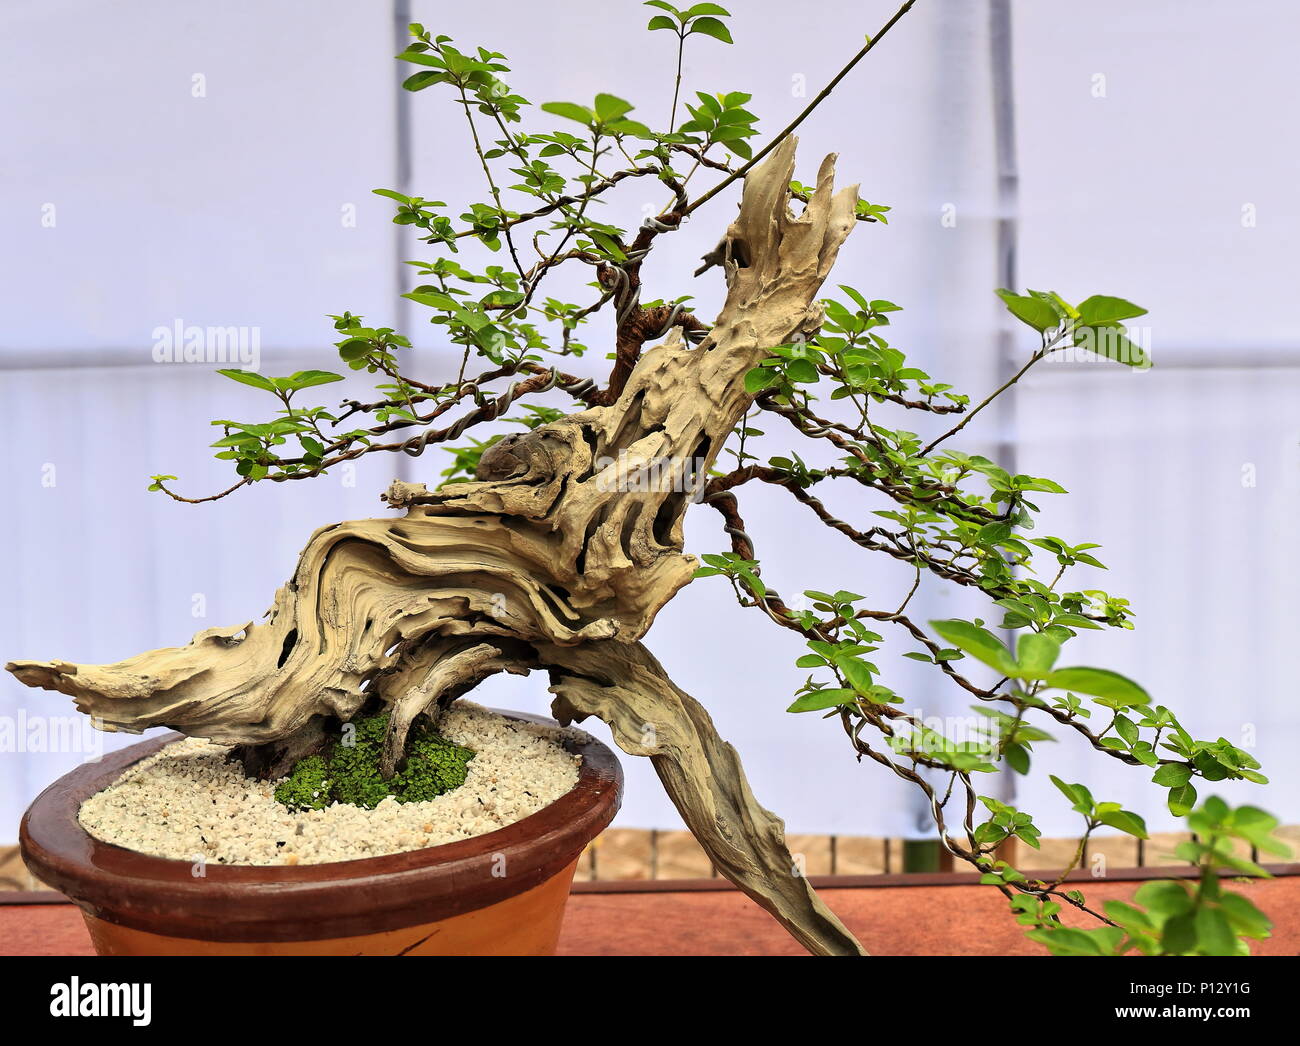 Bonsai Pflanzen oder 'Fach' - Japanische Kunst-container Anbau von kleinen  Bäumen die Form und der Umfang der in voller Größe zu imitieren. Dusky  brand Marke teak Baum Stockfotografie - Alamy